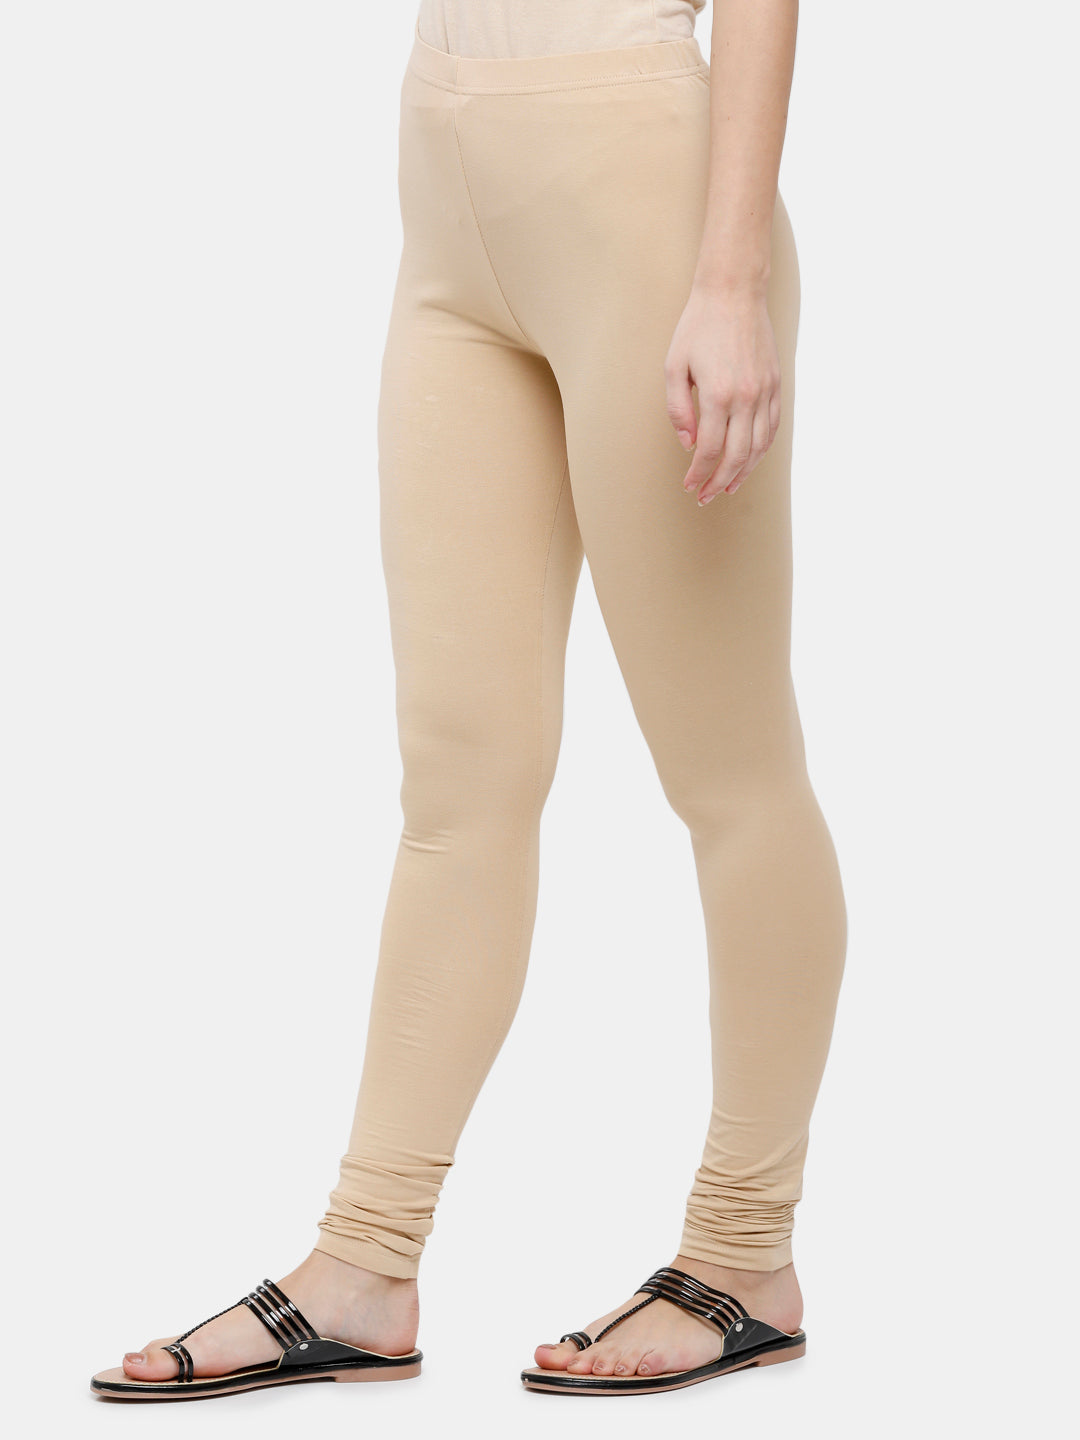 Beige Women's Slim Fit Cotton Ankle Length Leggings Legging for women  Sizes: S Small - KEX - 3767912